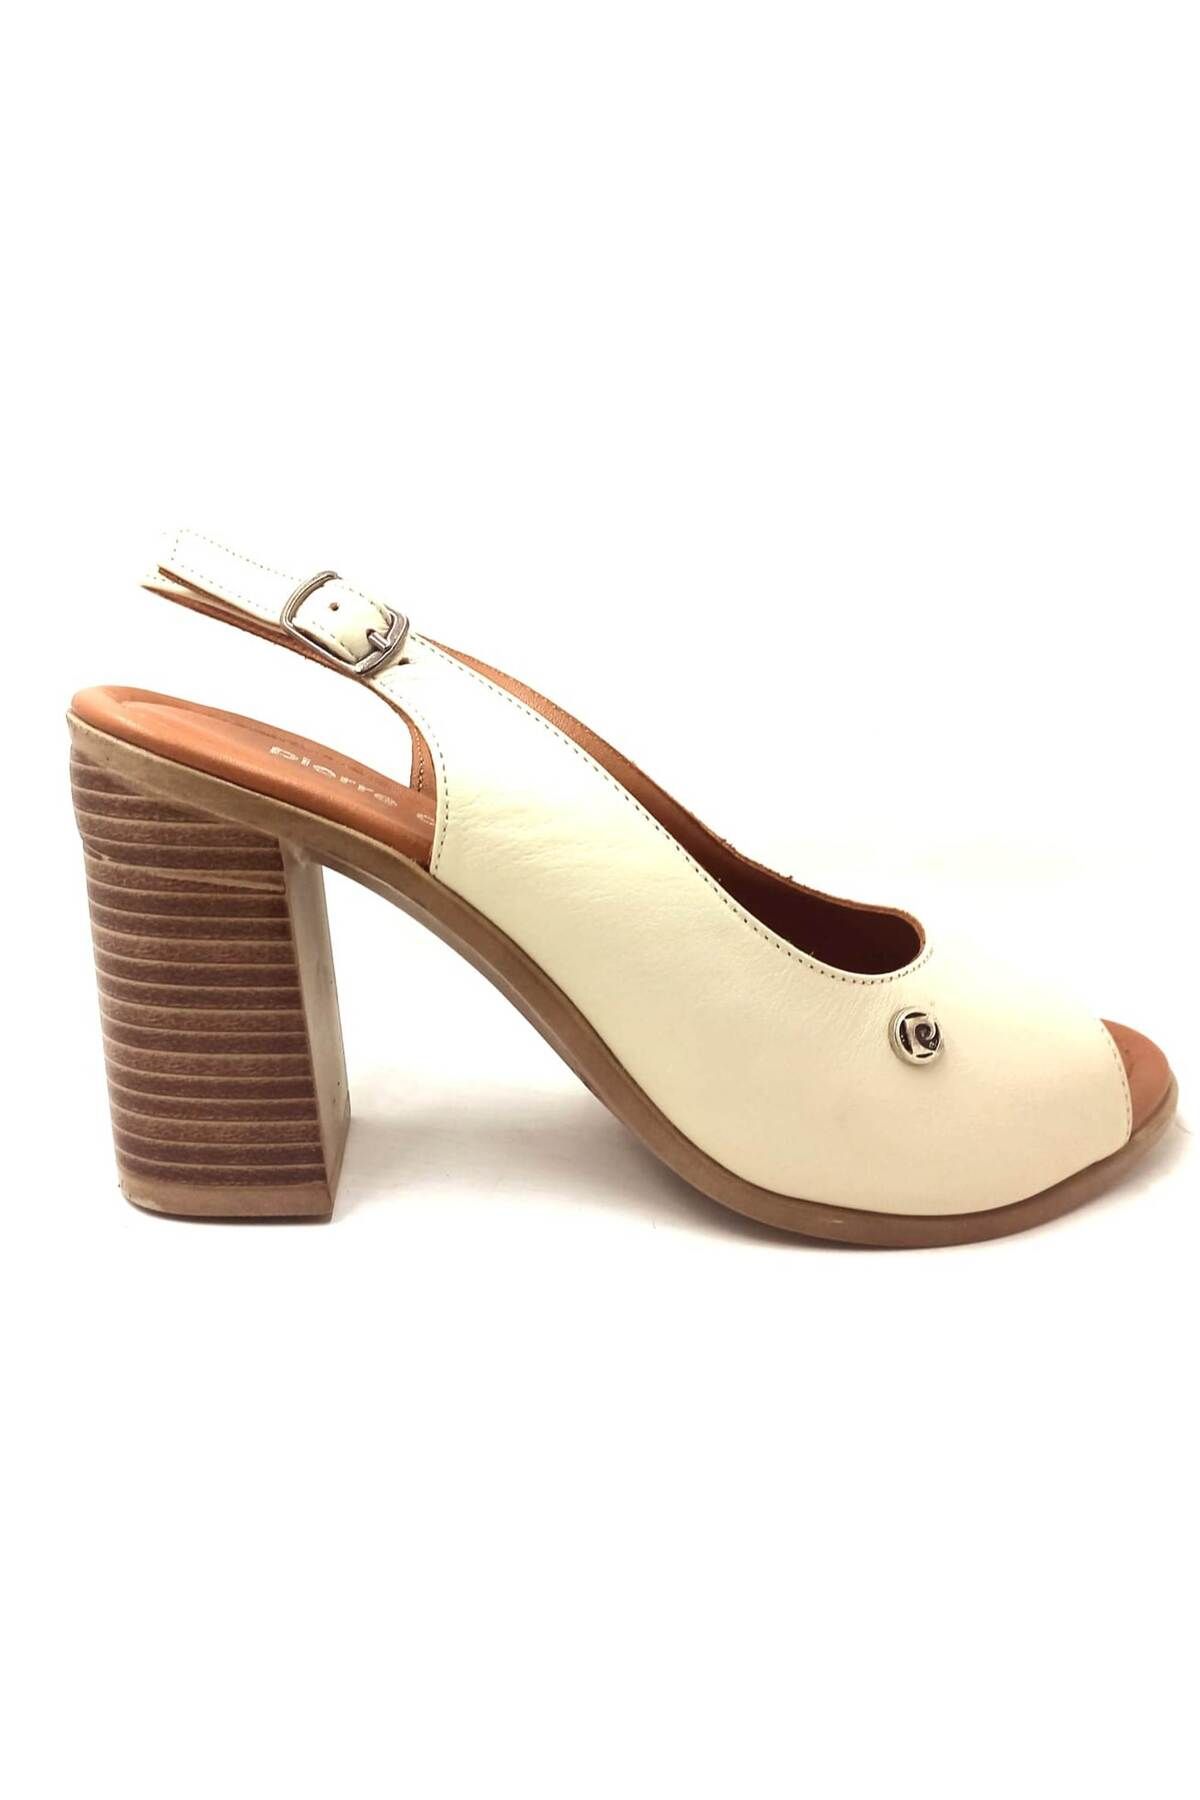 Pierre Cardin Pc-7074 Krem Deri Kadın Günlük Ayakkabı